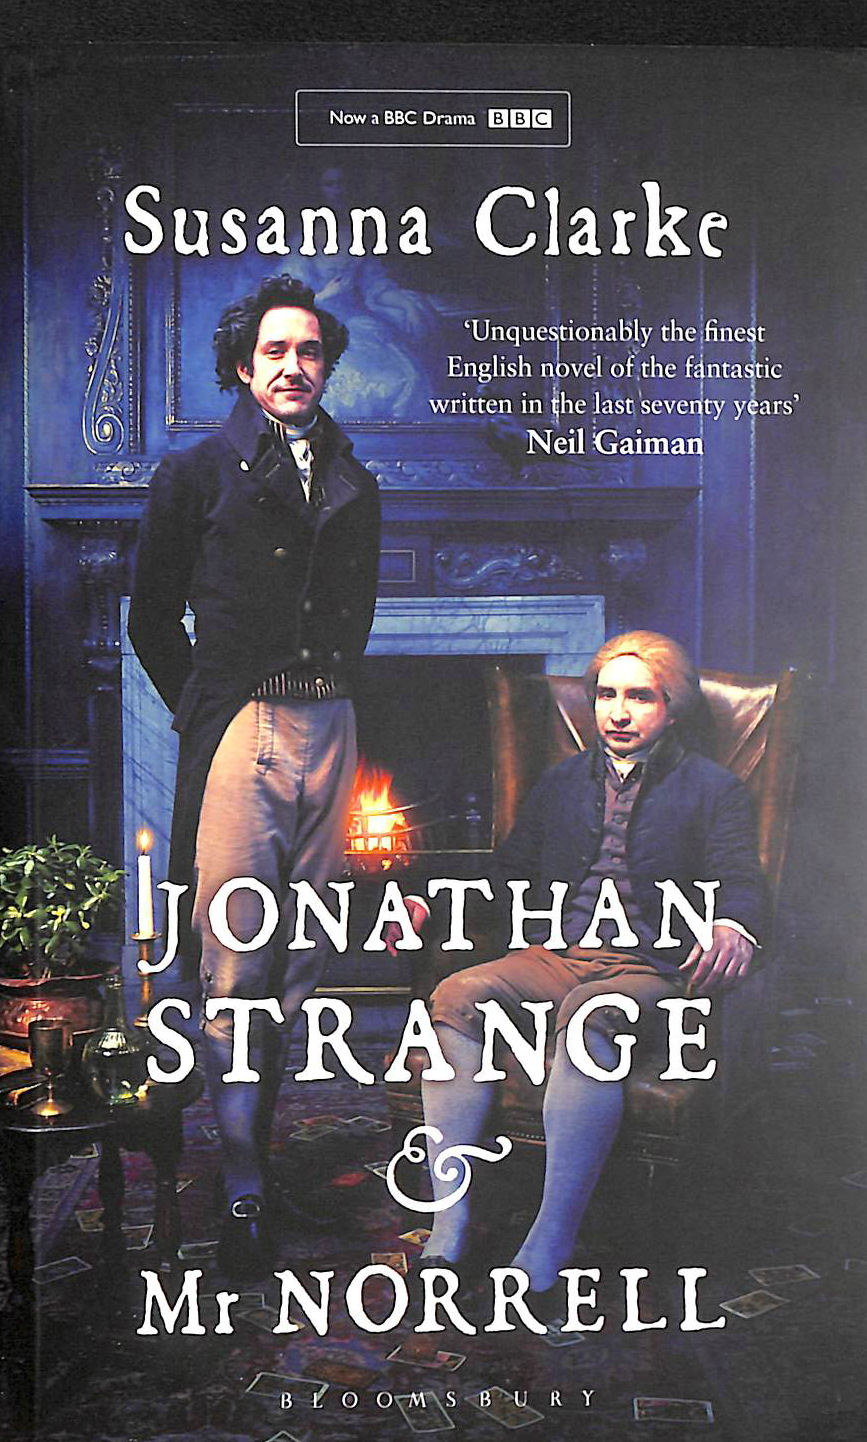 CLARKE, SUSANNA - Jonathan Strange and Mr Norrell: Susanna Clarke